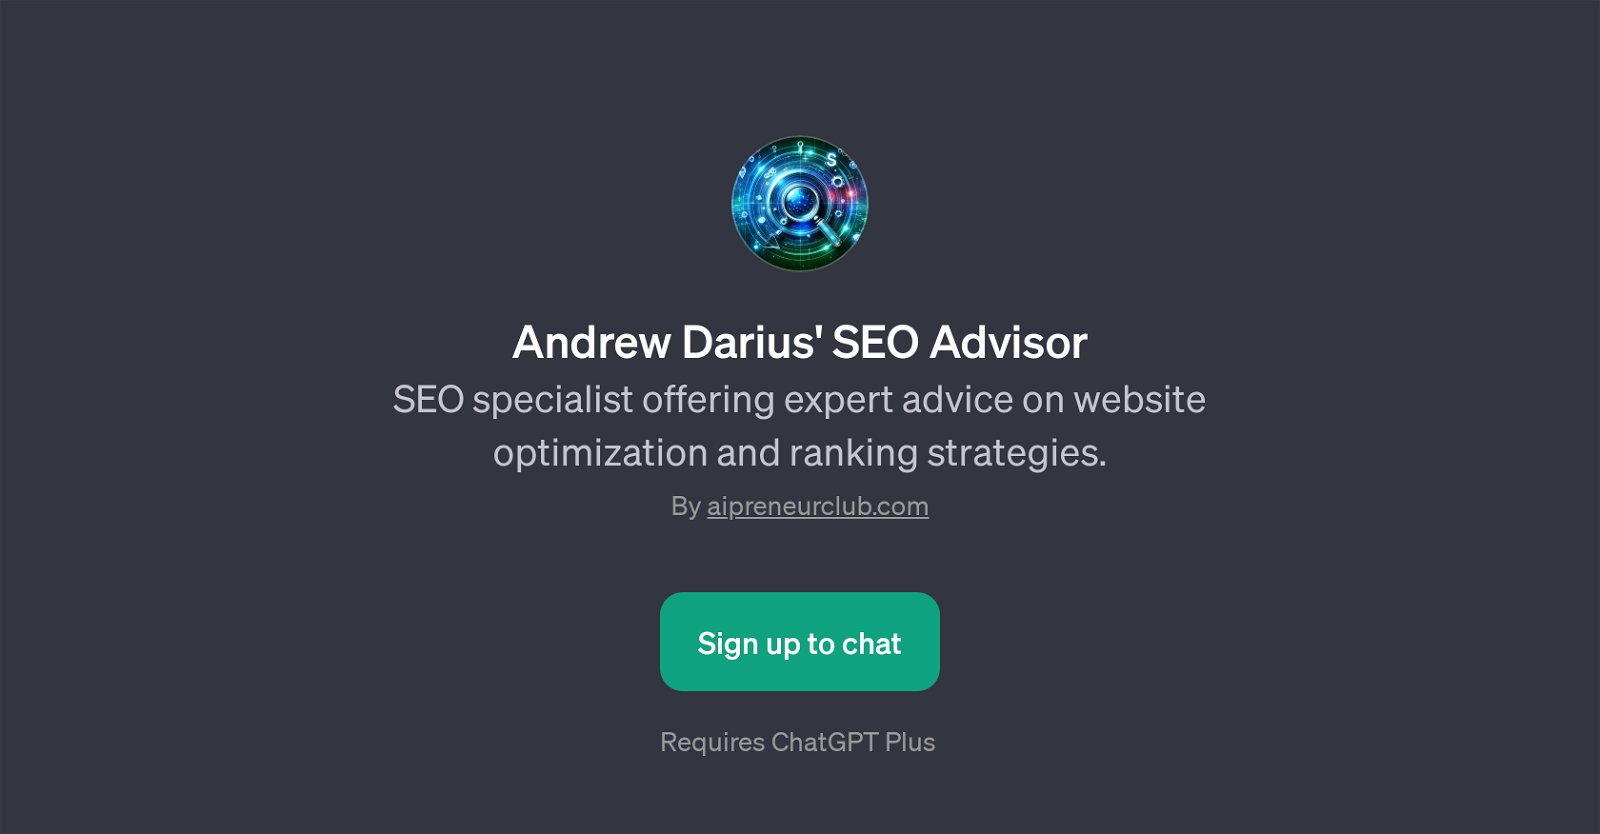 Andrew Darius' SEO Advisor website